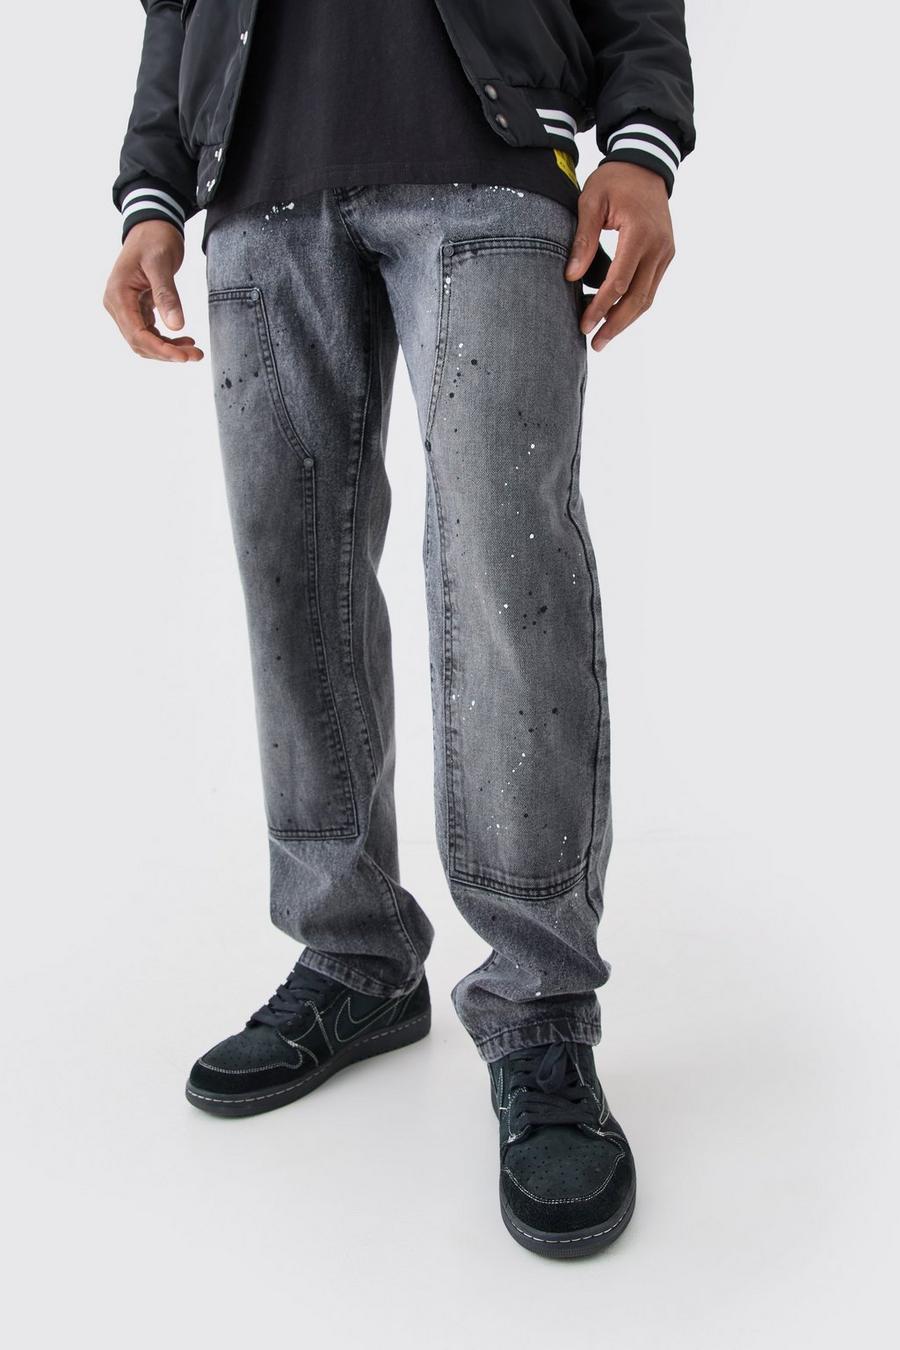 Jeans rilassati in denim rigido stile Carpenter in lavaggio acido, Charcoal